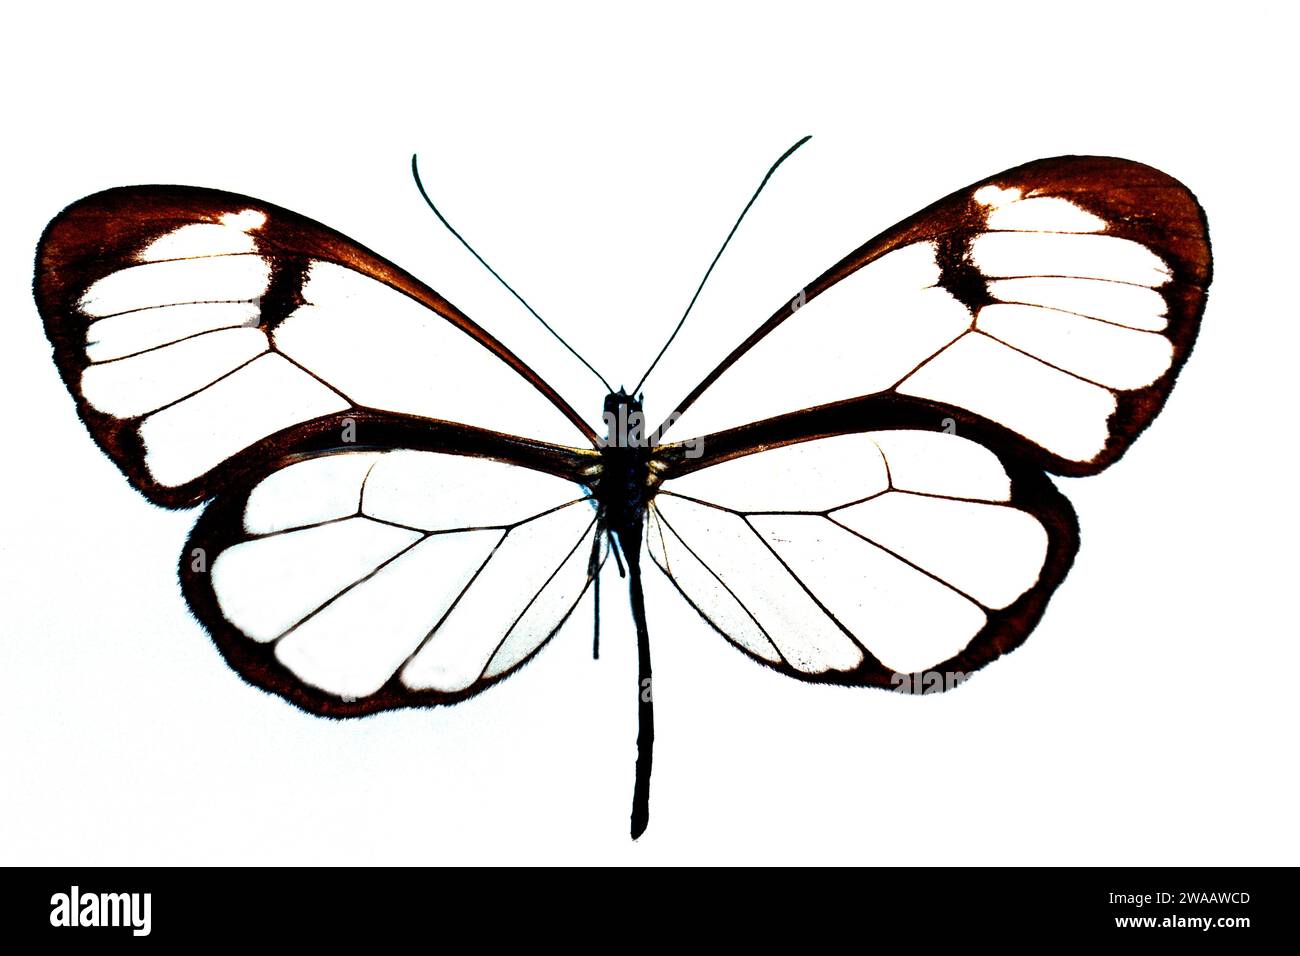 GRETA morgane est un papillon originaire du Mexique et de l'Amérique centrale. Adulte, côté dorsal. Banque D'Images